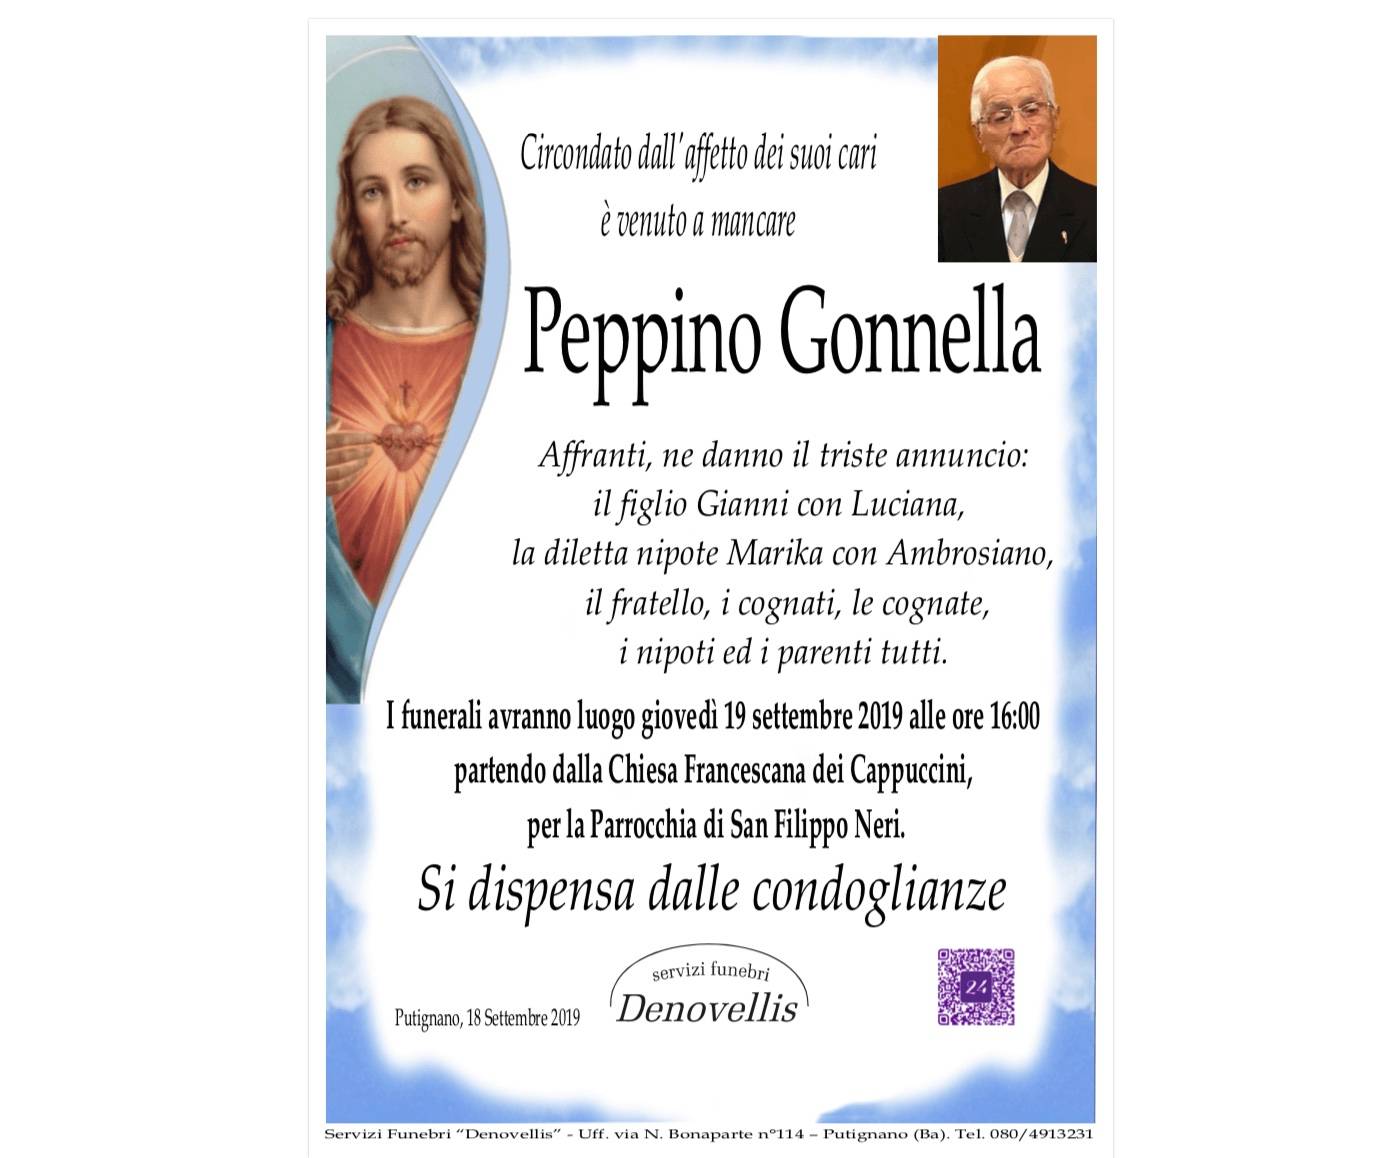 Peppino Gonnella